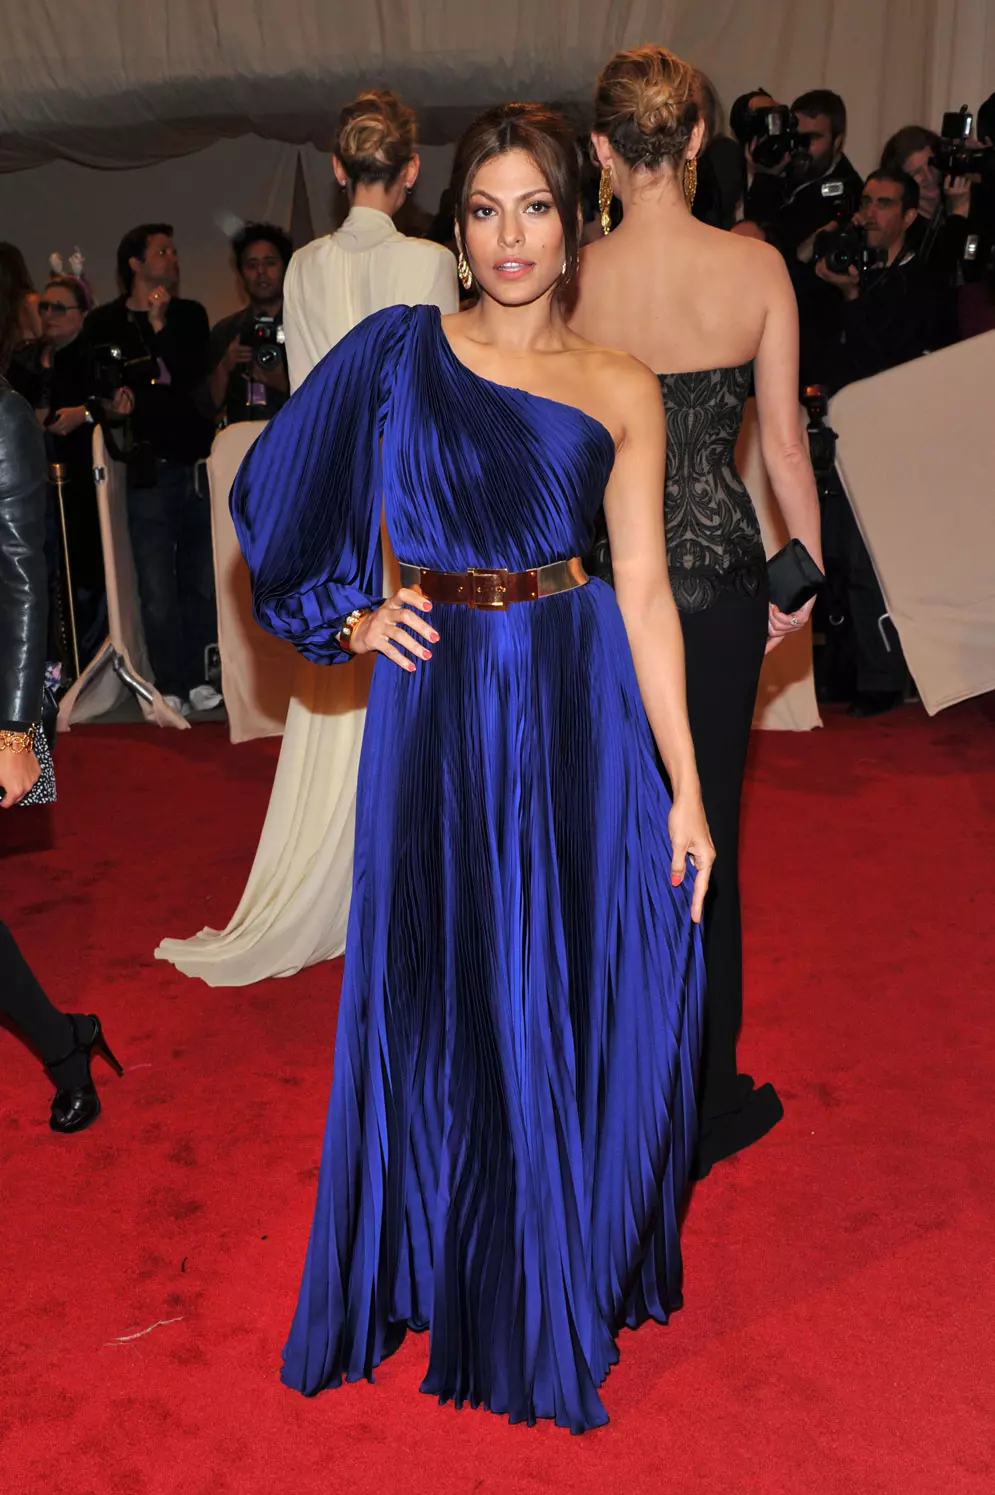 אווה מנדז לובשת סטלה מקארתני בגאלת המט, ניו יורק, מאי 2011